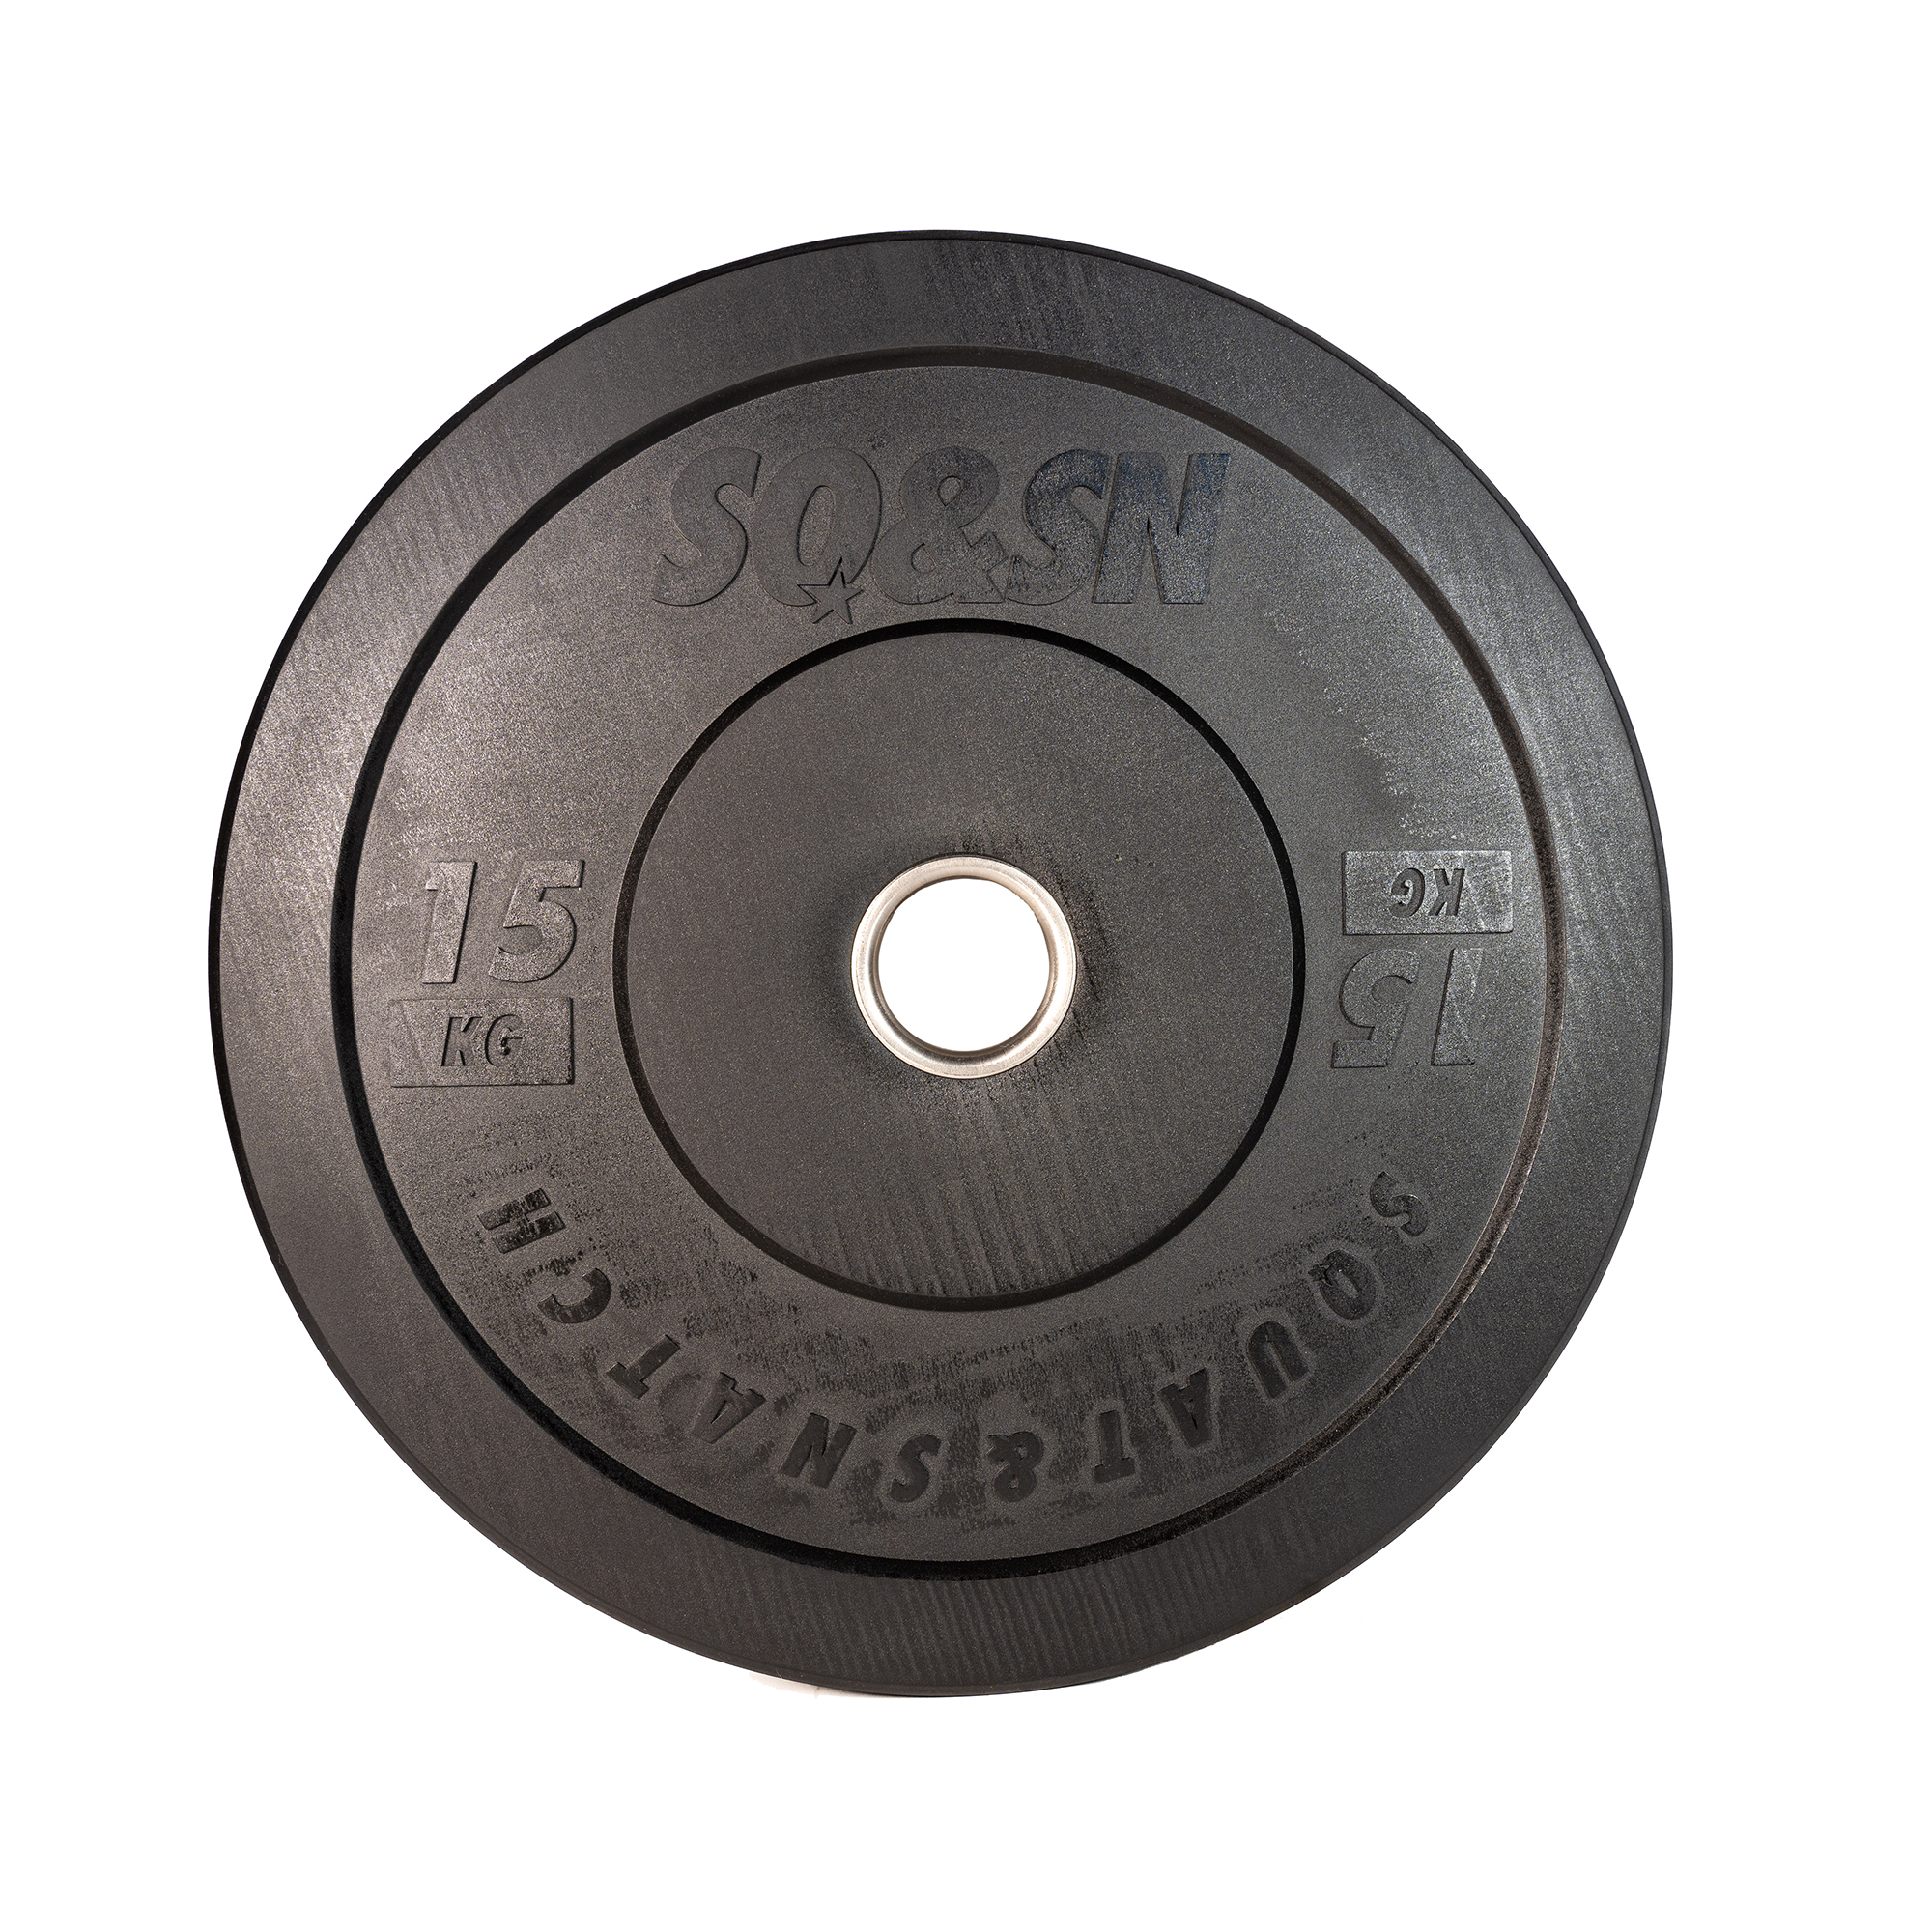 SQ&SN Bumper Plate Vægtskive (15 kg) i sort. Udstyr til styrketræning, vægtløftning og crossfit træning thumbnail